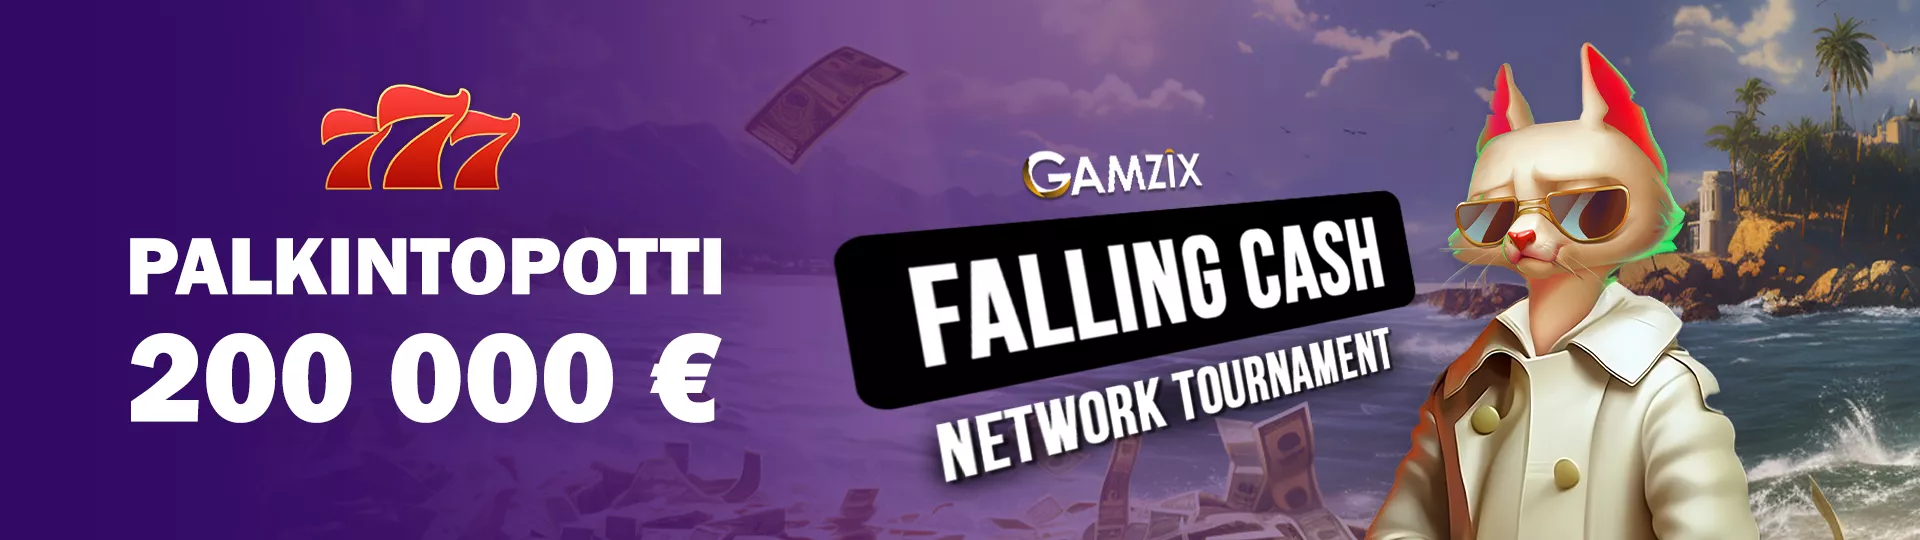 Liity GAMZIX NETWORK -portiston kolikkopeli-turnaukseen ja voita 65000 euroa!